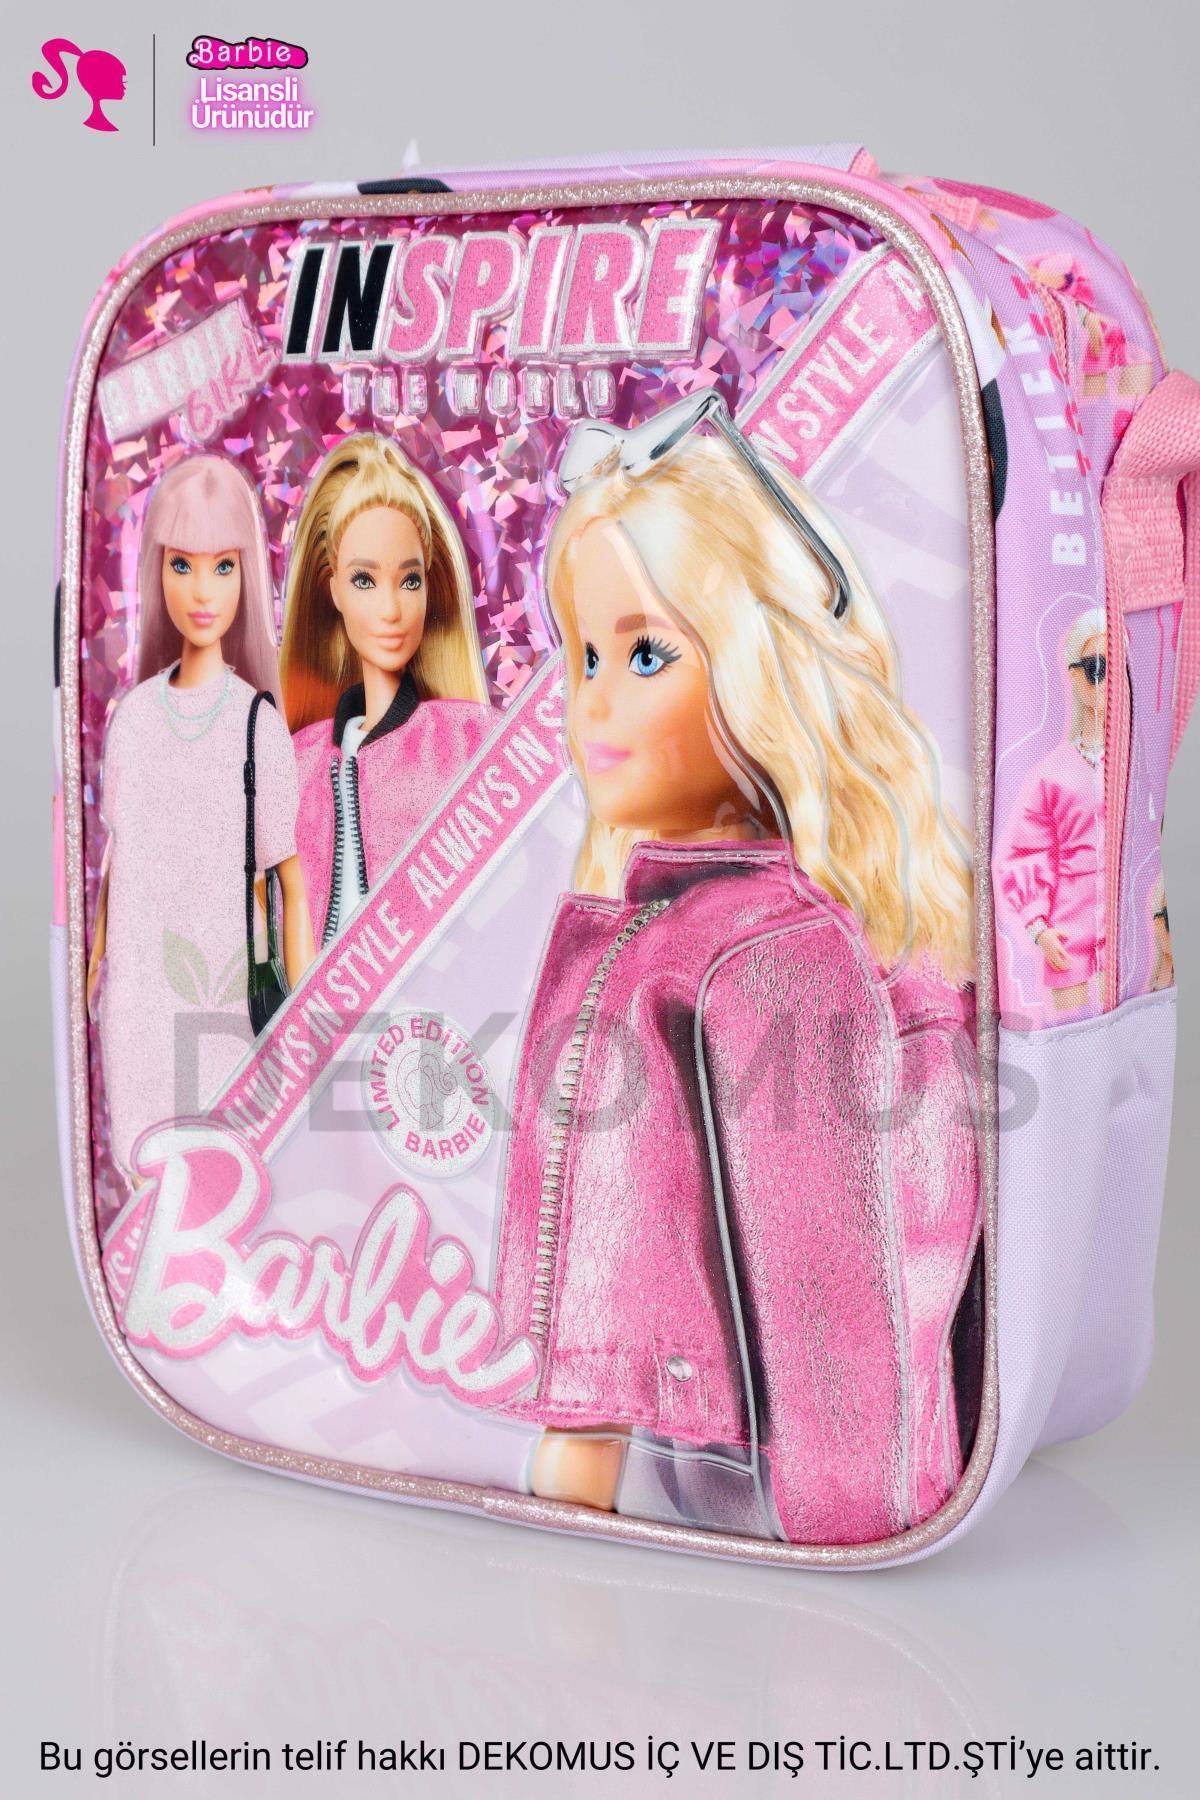 Barbie YENİ SEZON LİSANSLI BARBIE BESLENME ÇANTASI DUE INSPIRE YALITIMLI